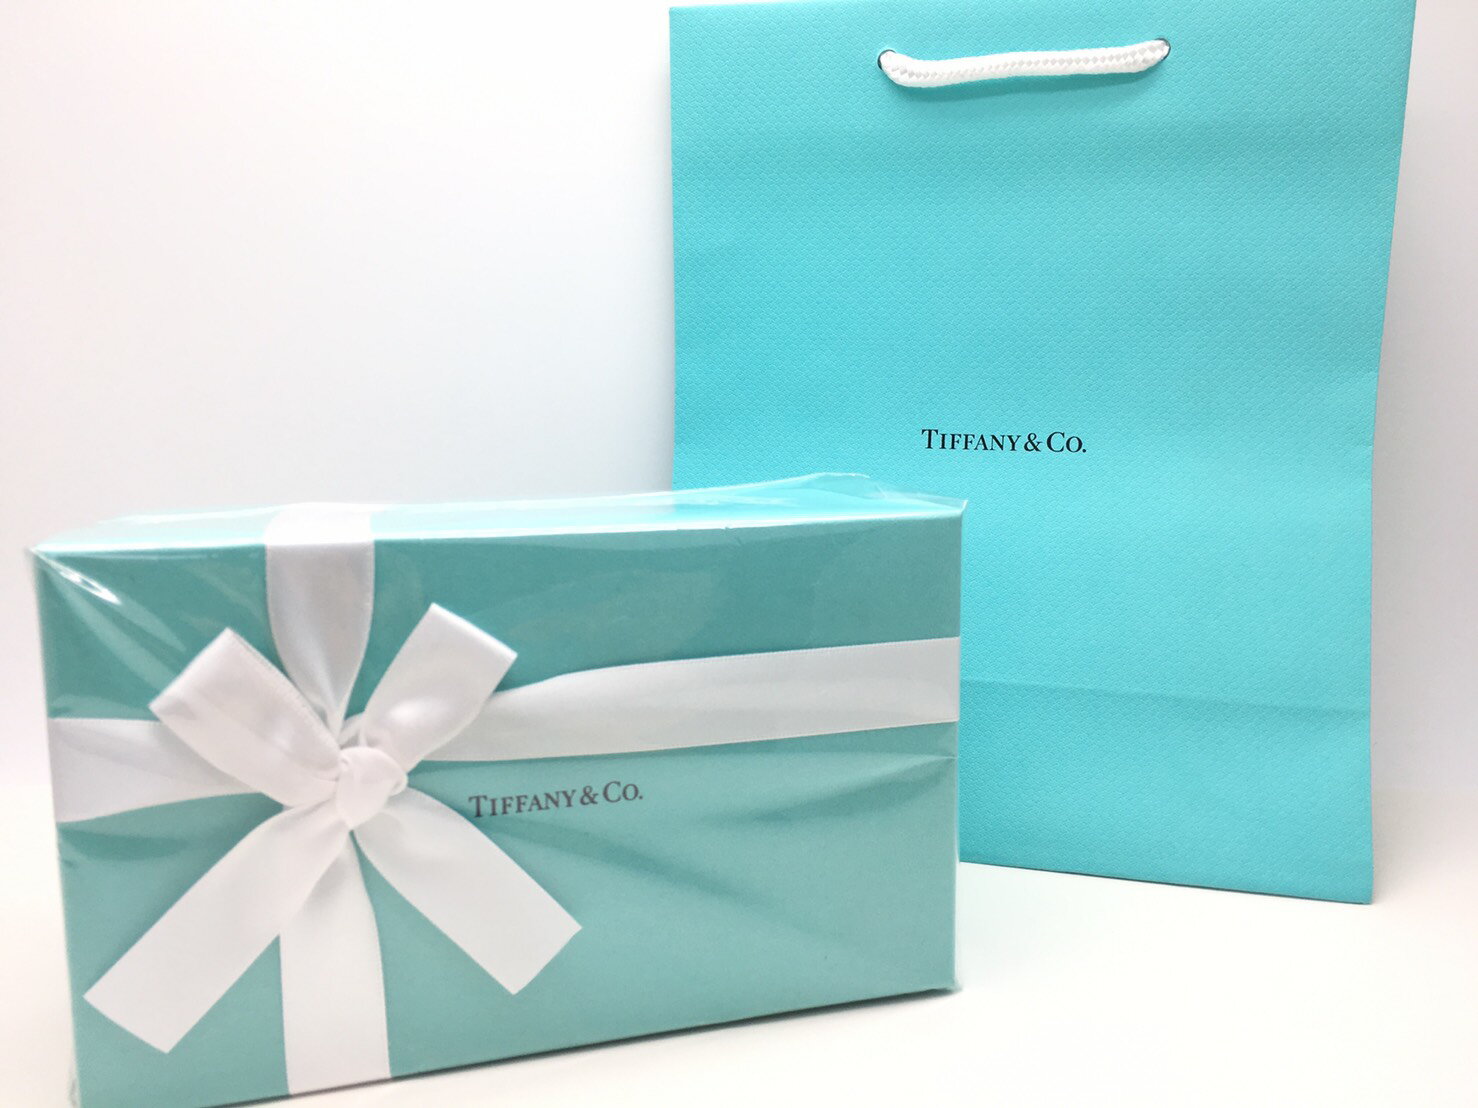 【楽天市場】名入れ ティファニー Tiffany&Co.ペアクリスタルグラス記念品 退職祝い 引越し祝い 名入れギフト 名入れ無料 内祝い